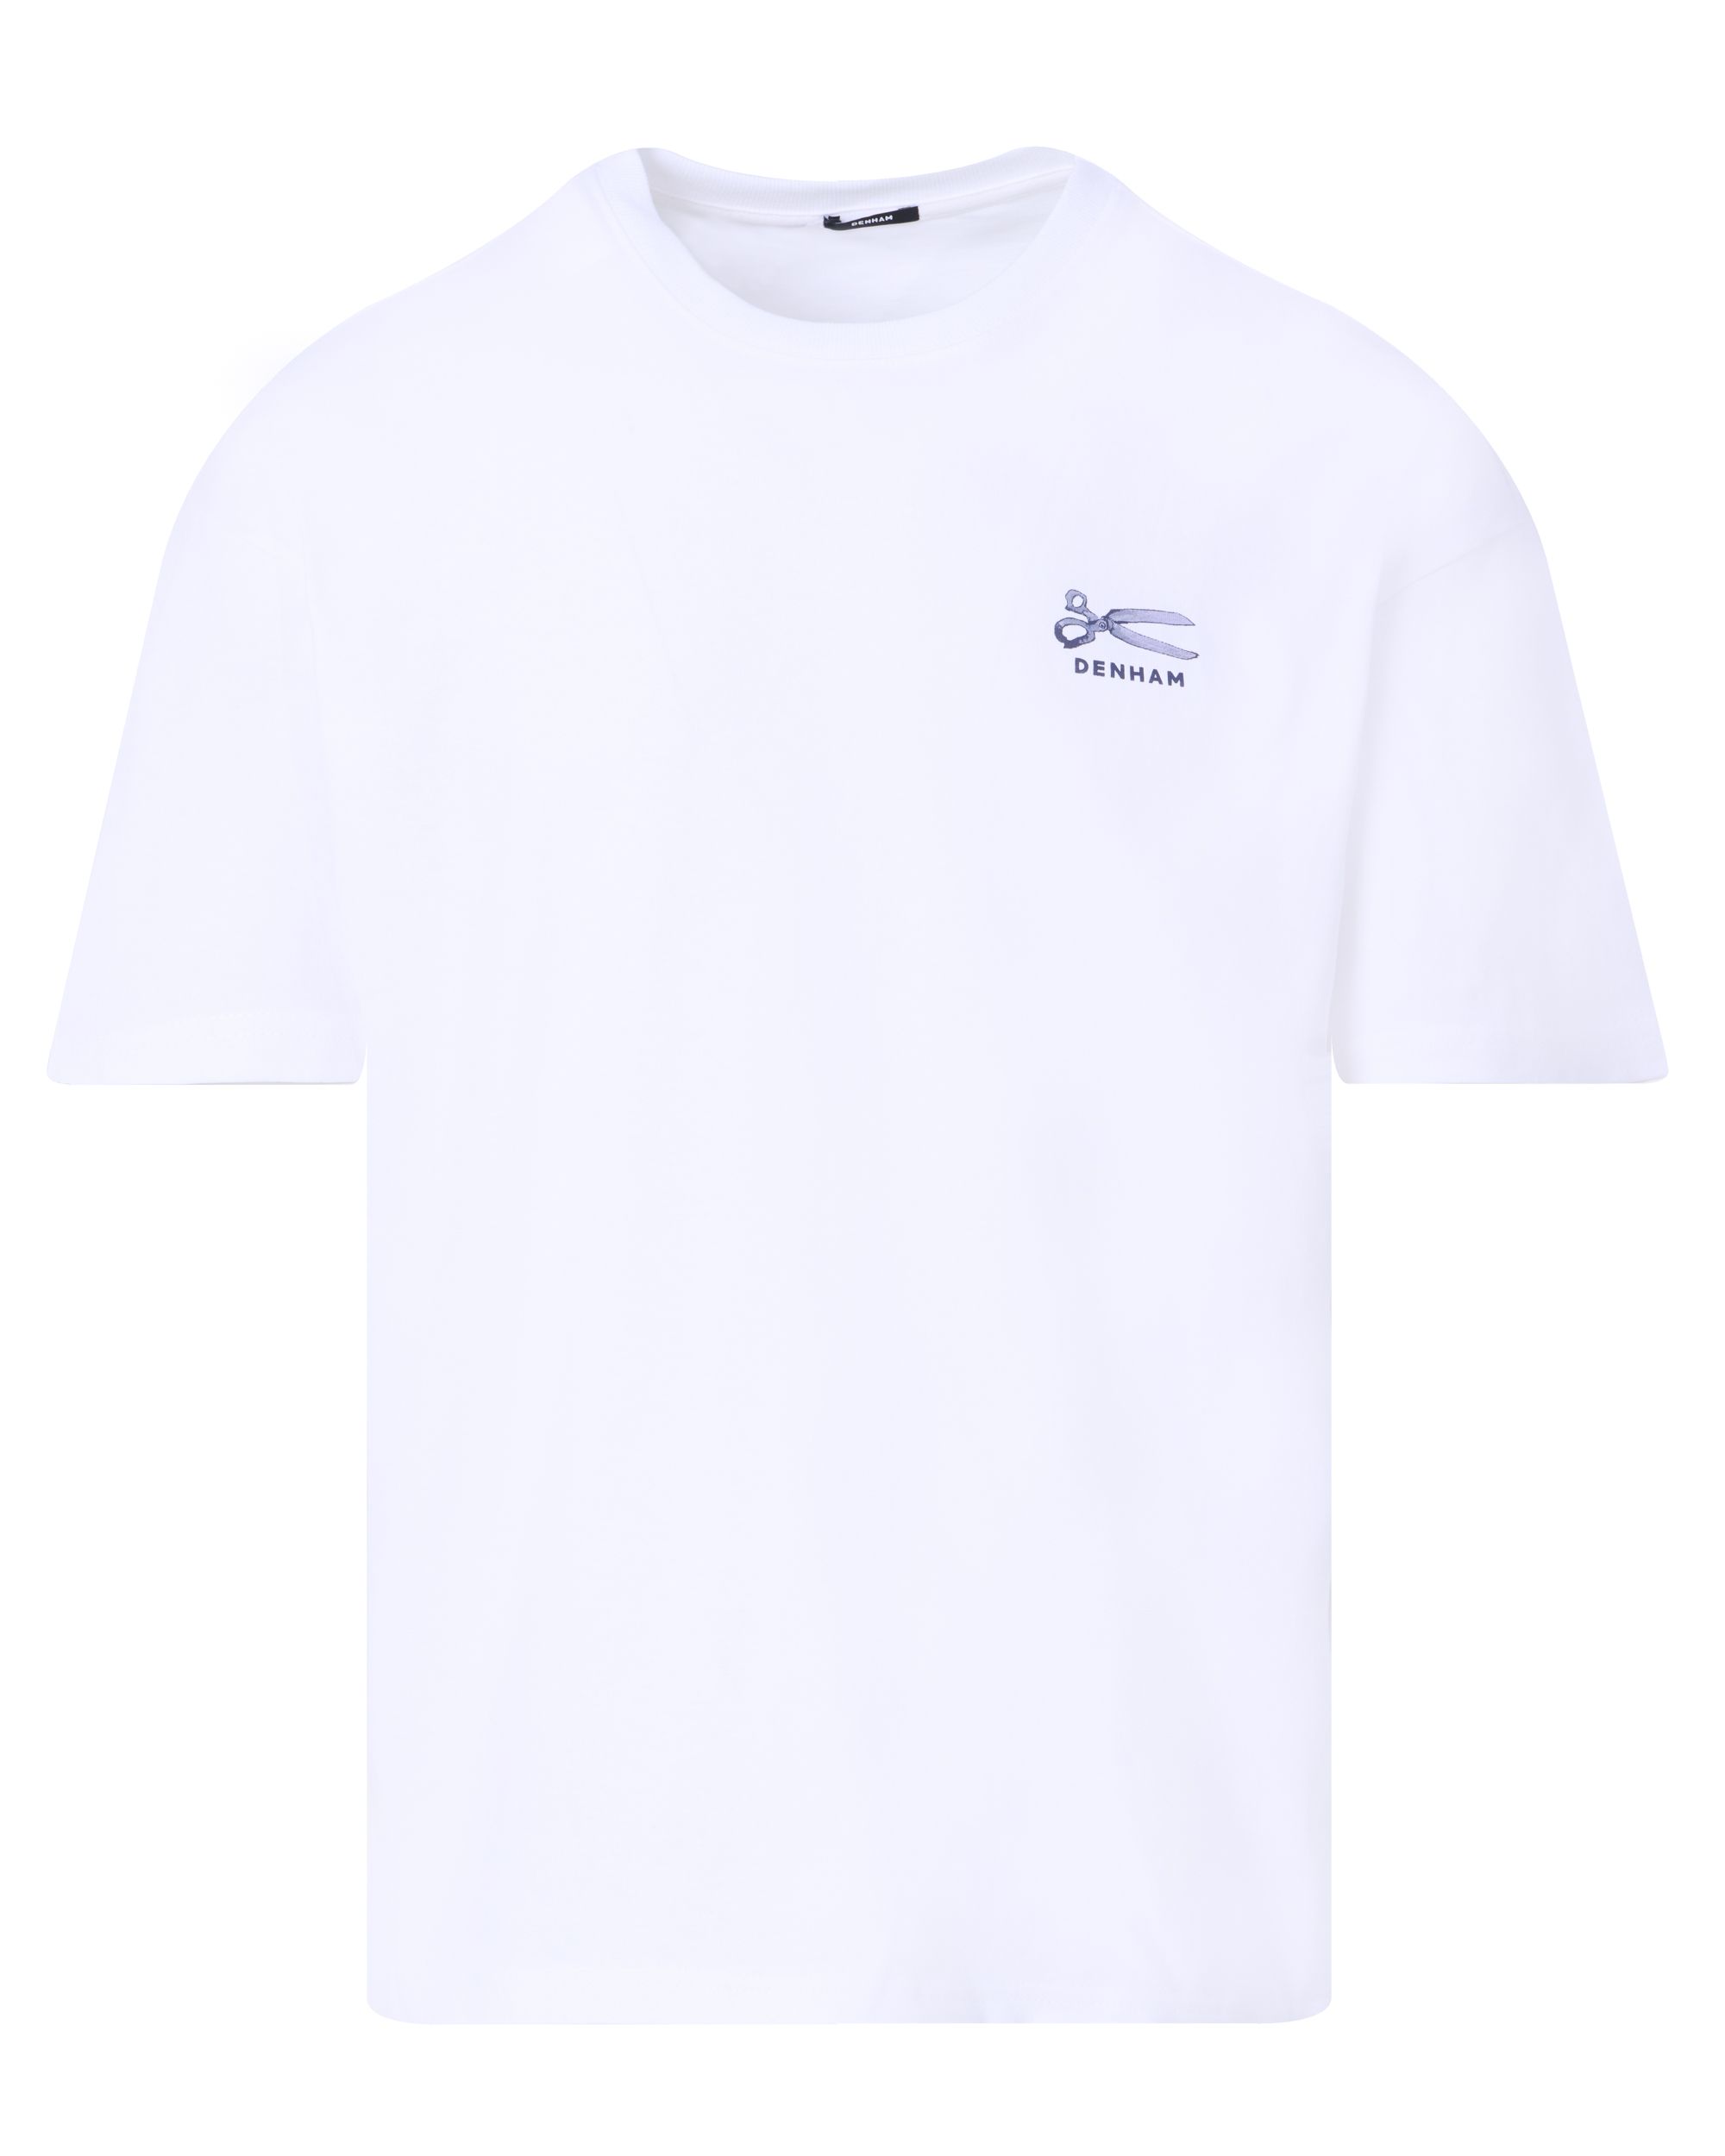 DENHAM Snip Box T-shirt KM Wit 094453-001-L